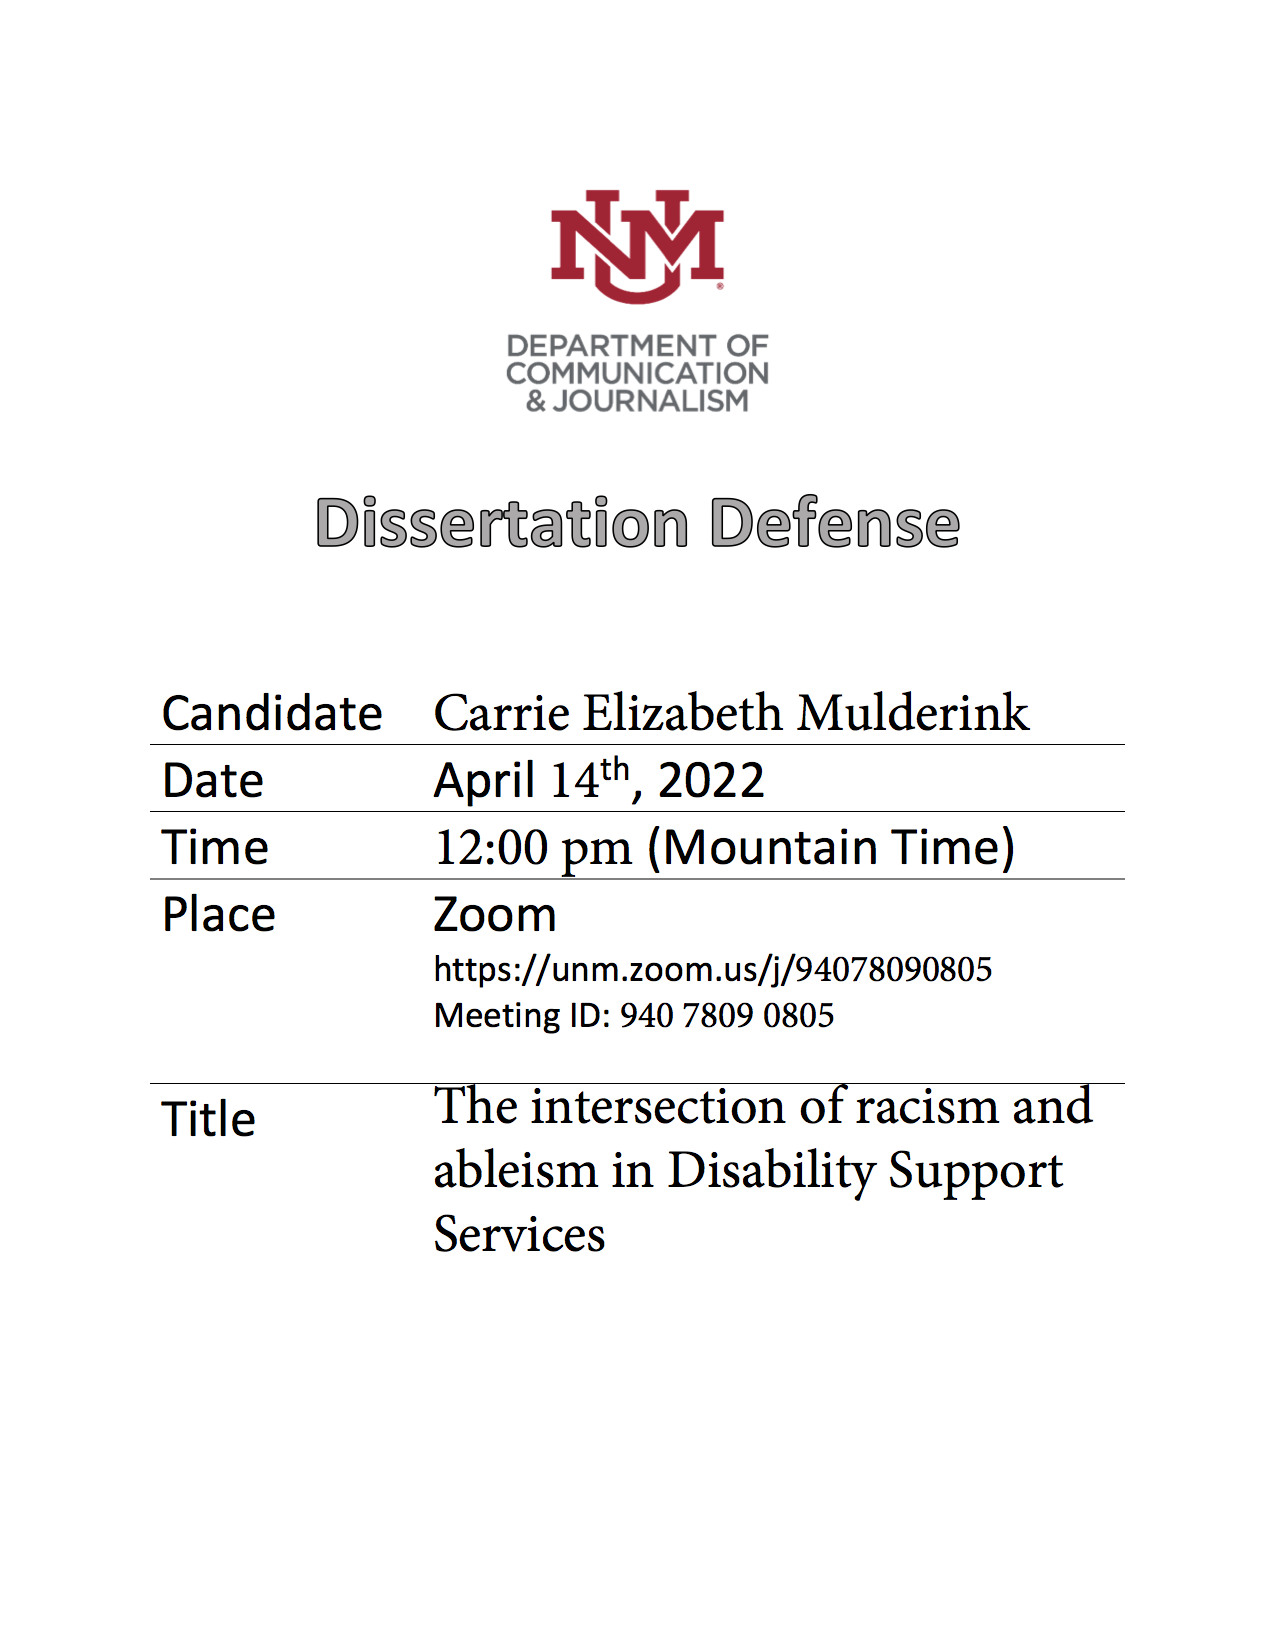 mulderink-dissertation-defense-flyer.png